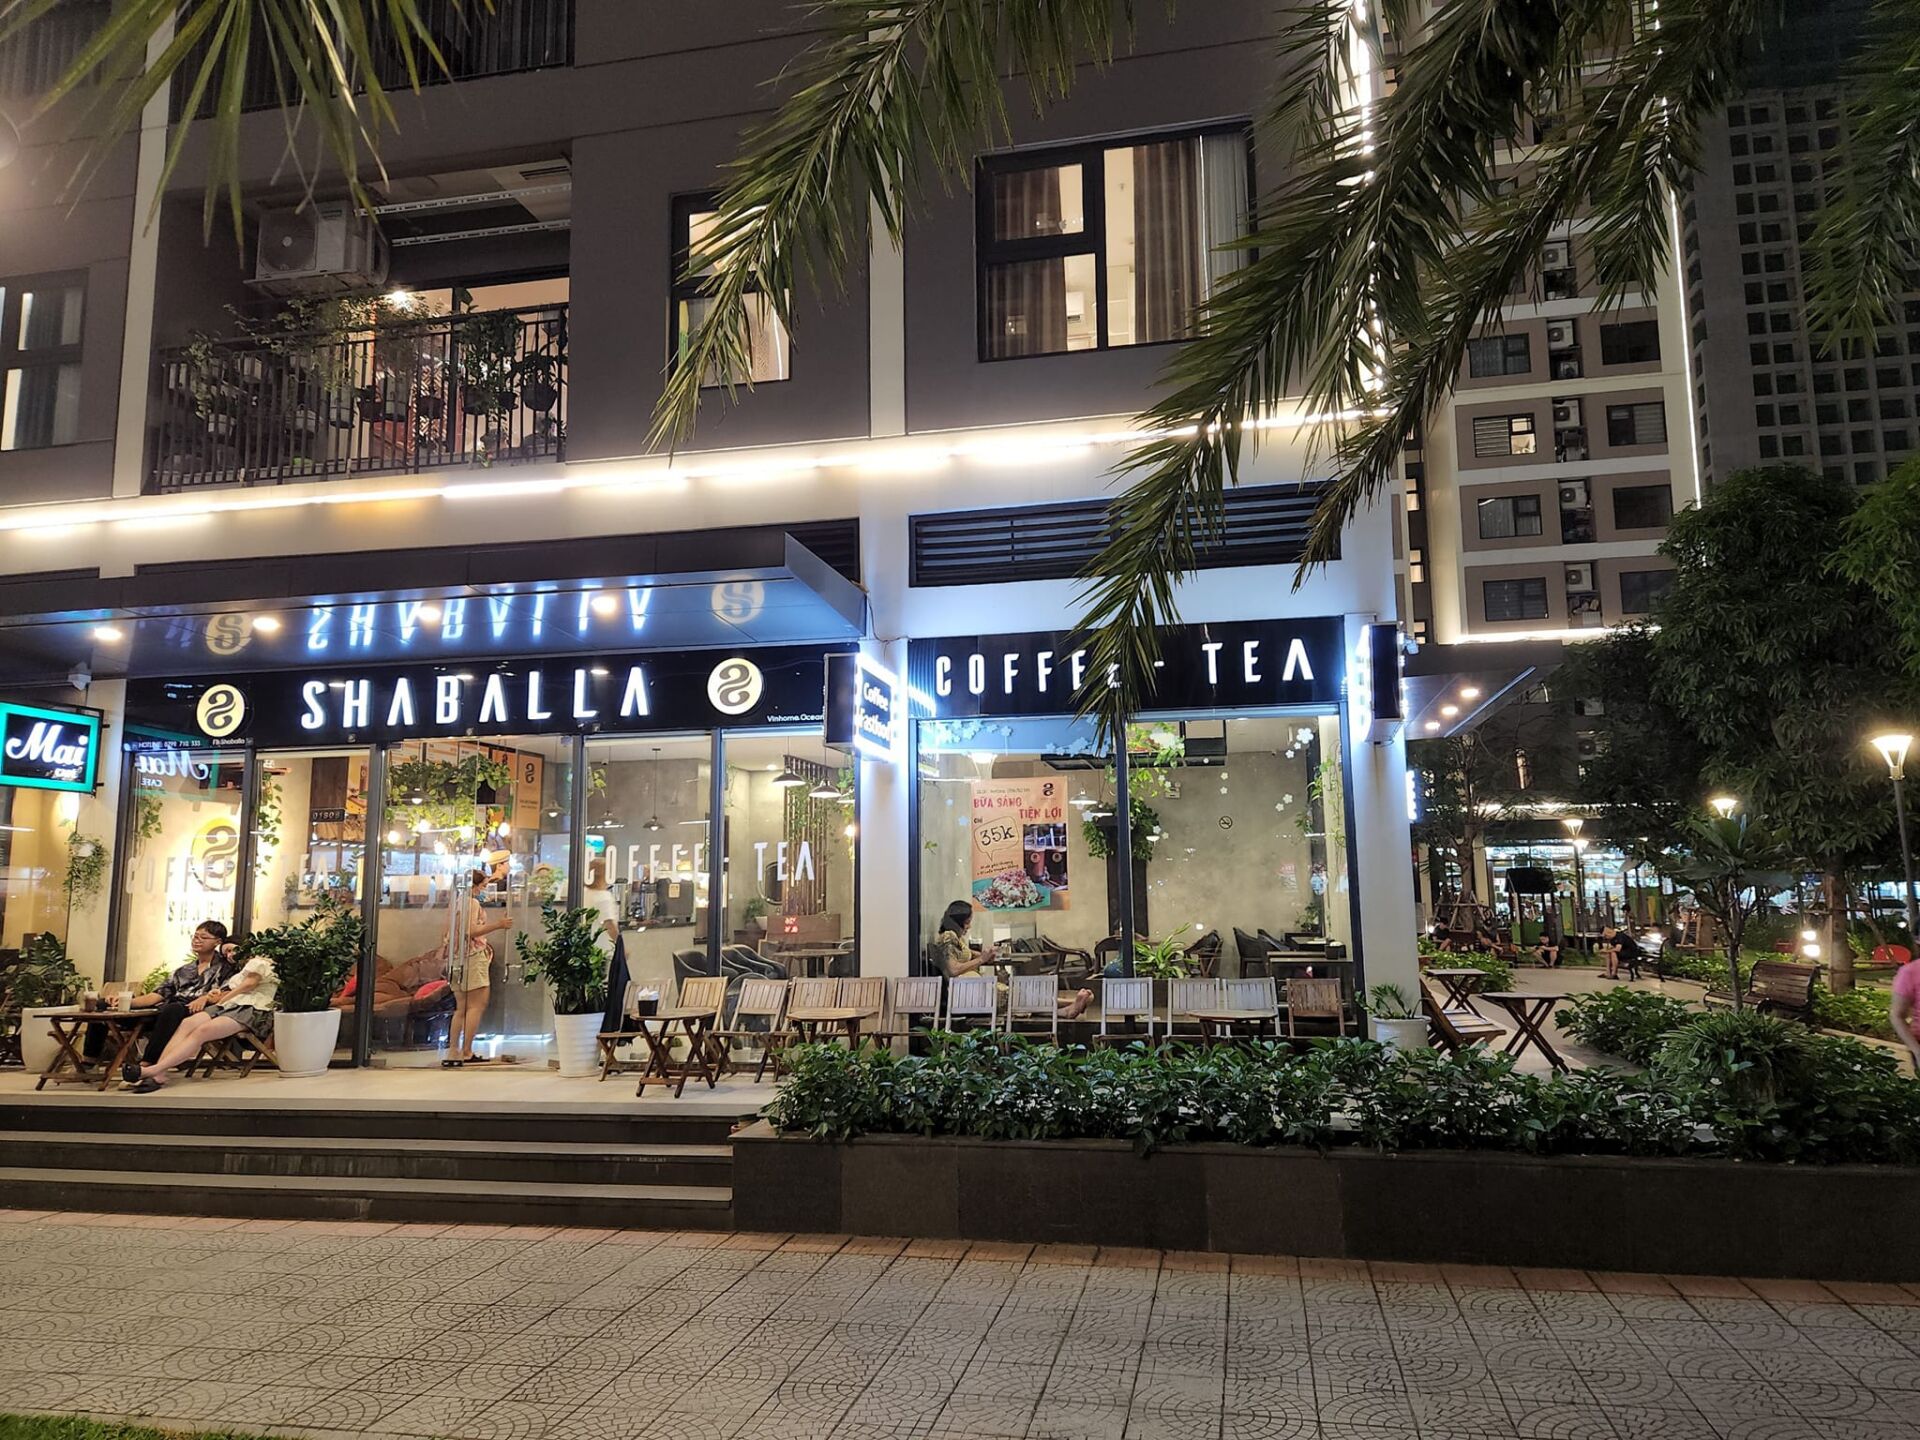 Shaballa Coffee Tea